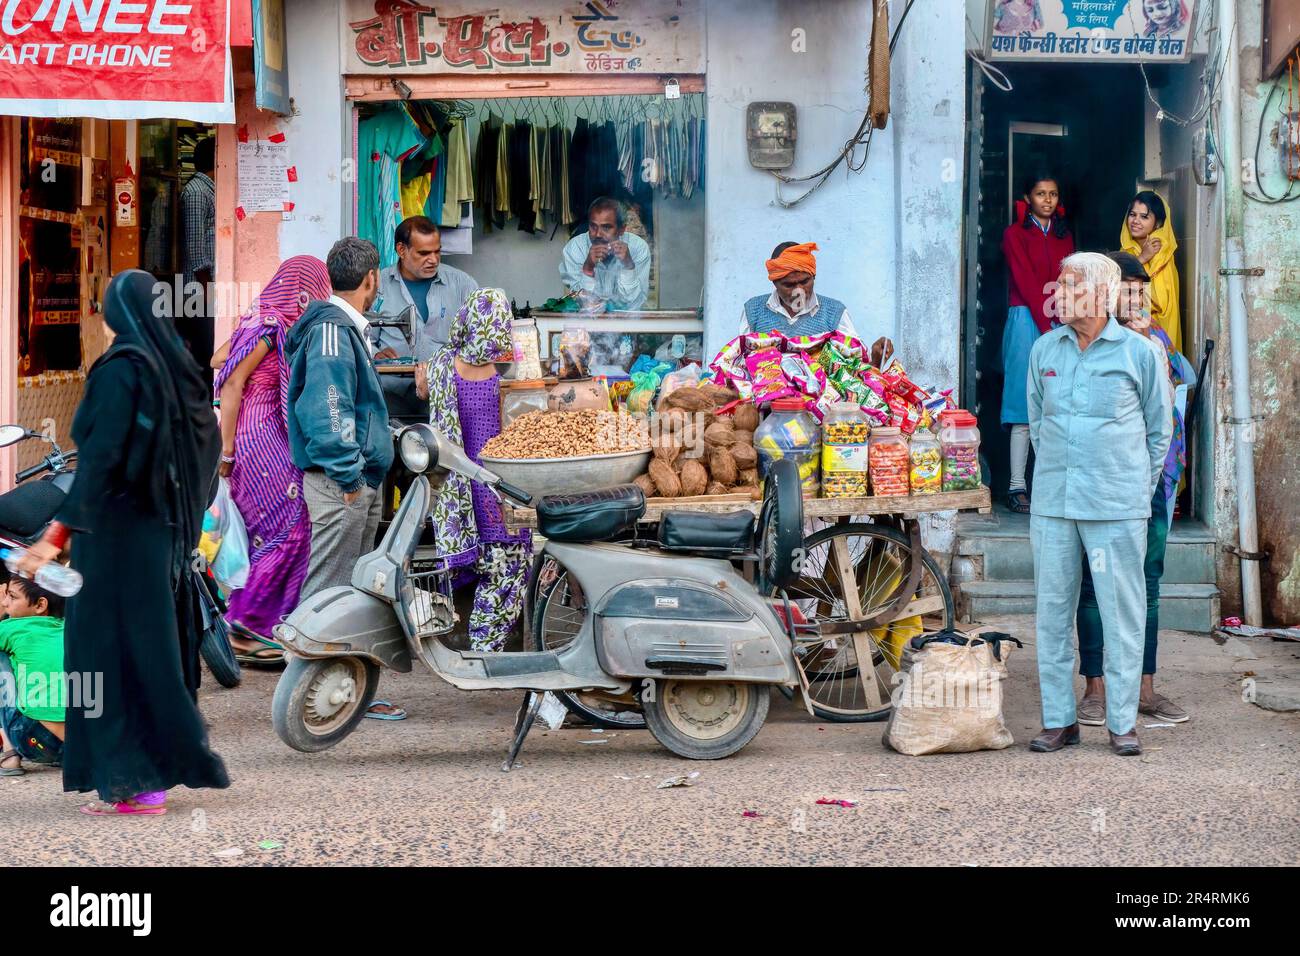 Mandawa, Rajasthan, Indien - 17. November 2015. Das tägliche Leben der Menschen in einer Nachbarschaftsstraße mit einem Imbisskarren, Roller und einer Wäscherei eines Imbissverkäufers. Stockfoto